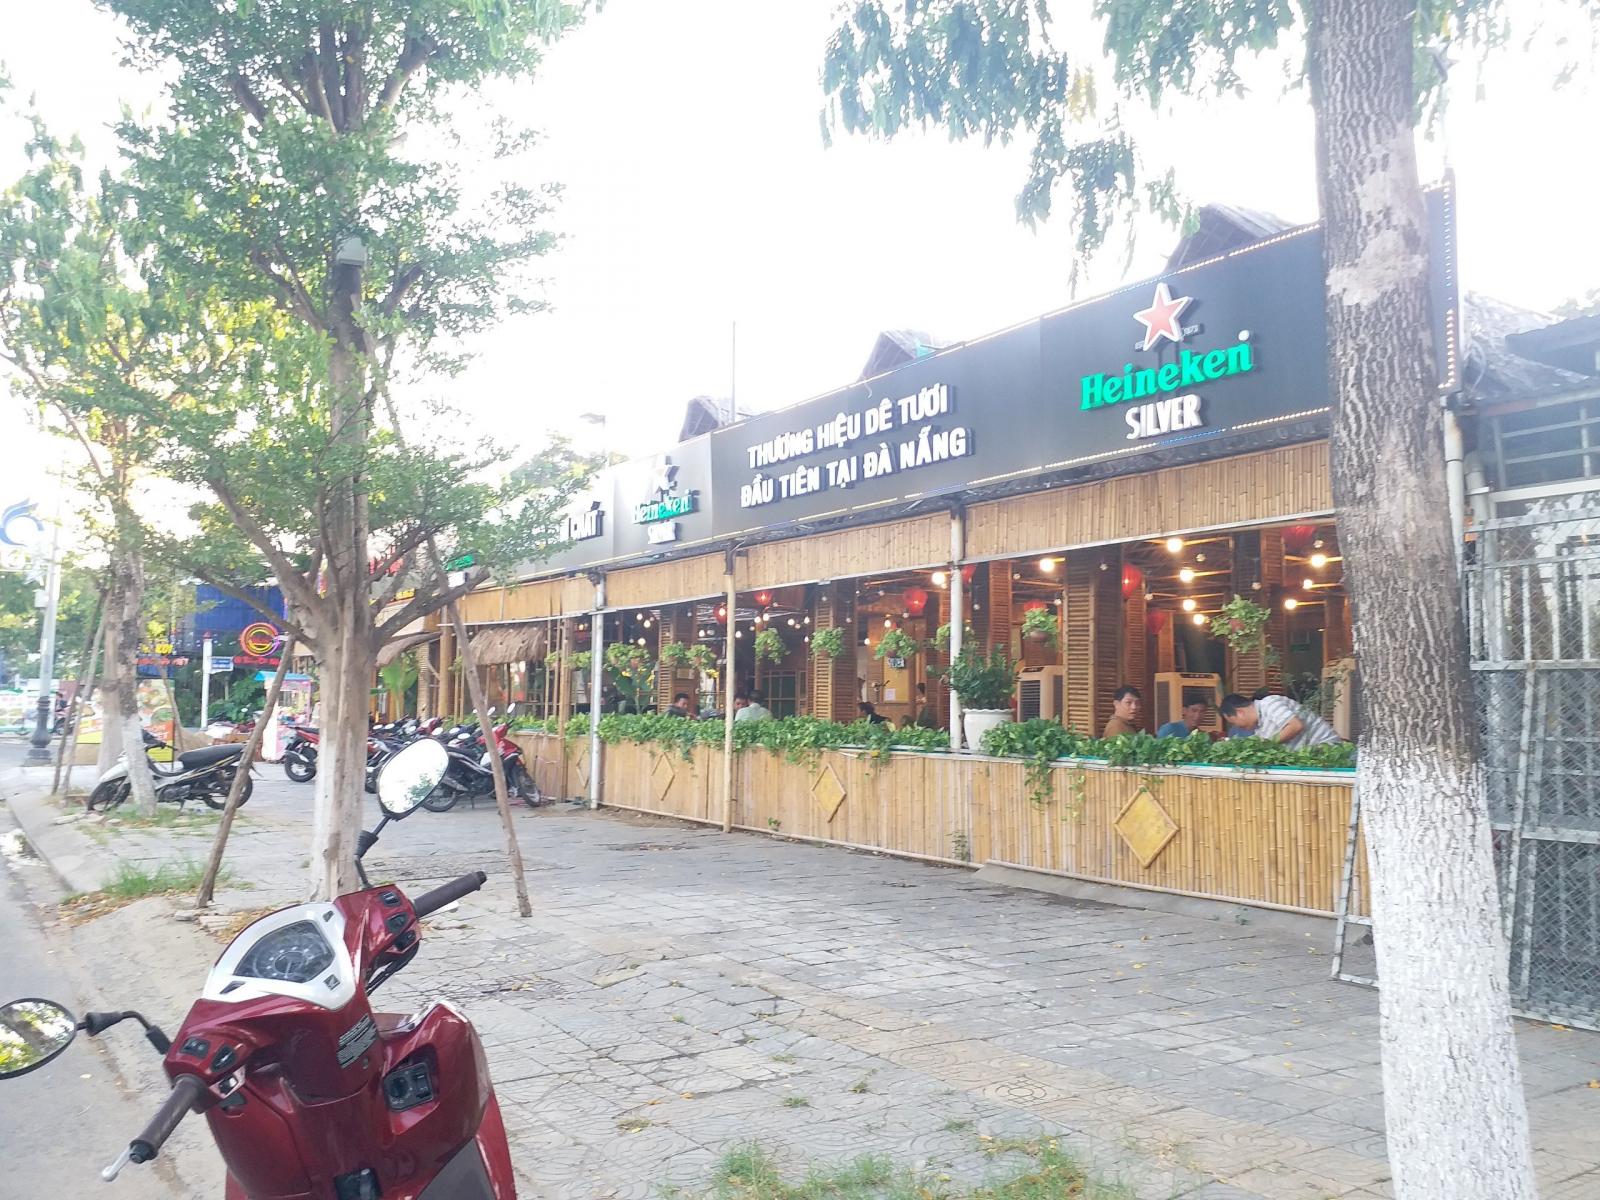  Cho thuê lô đất mặt tiền đường Thăng Long,Khu vực nhà hàngg quán ăn sầm uất, Đông Đúc sát Hoà Xuân